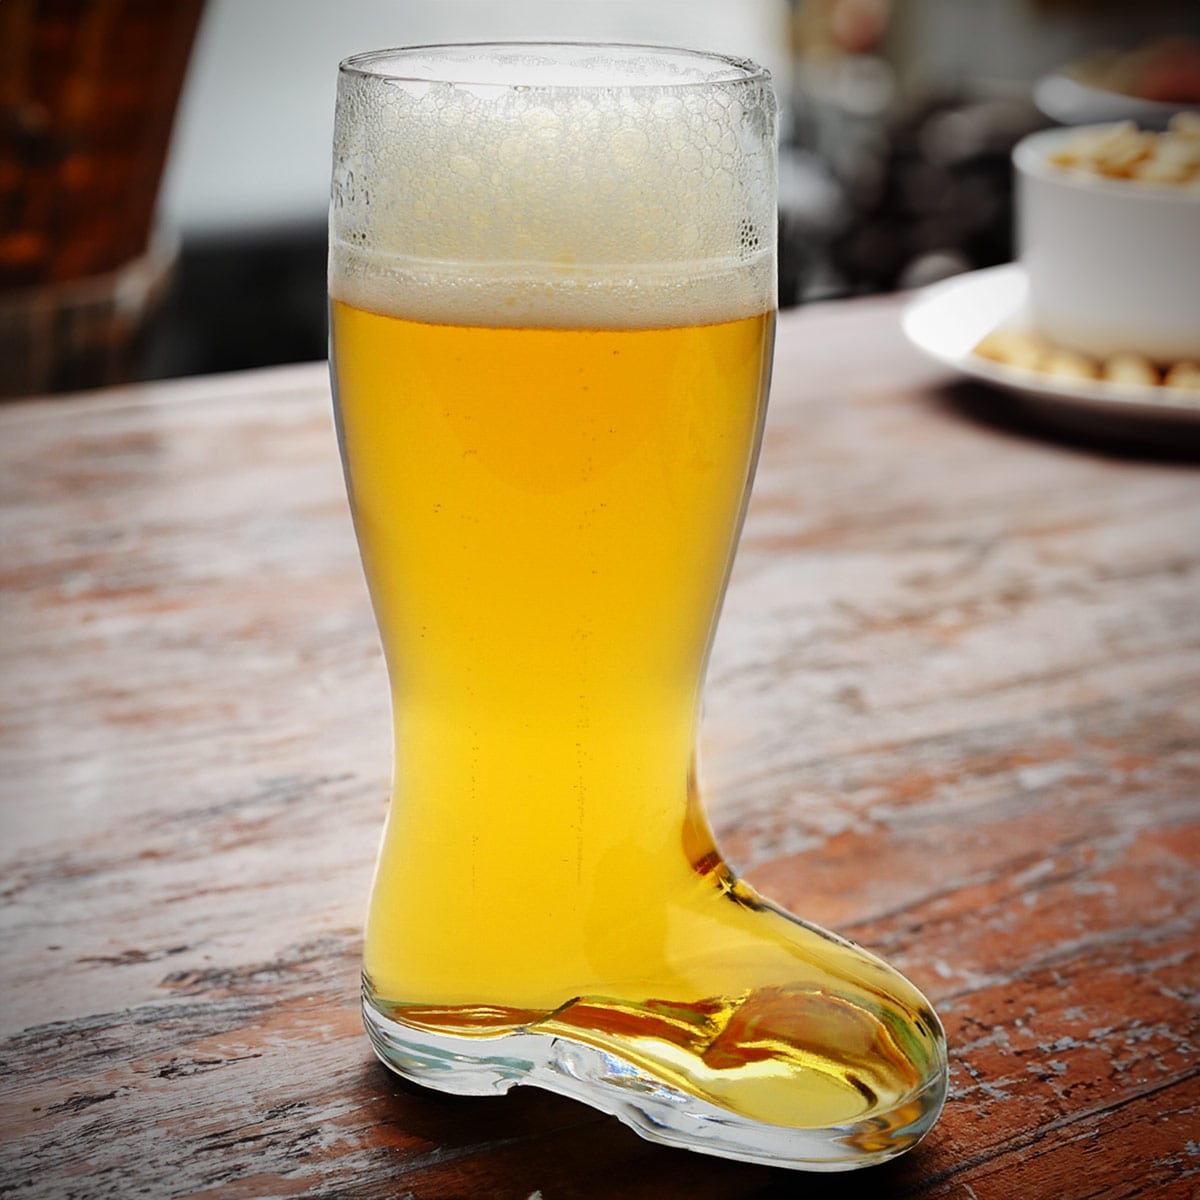 Authentic German Beer Boot - 18 oz